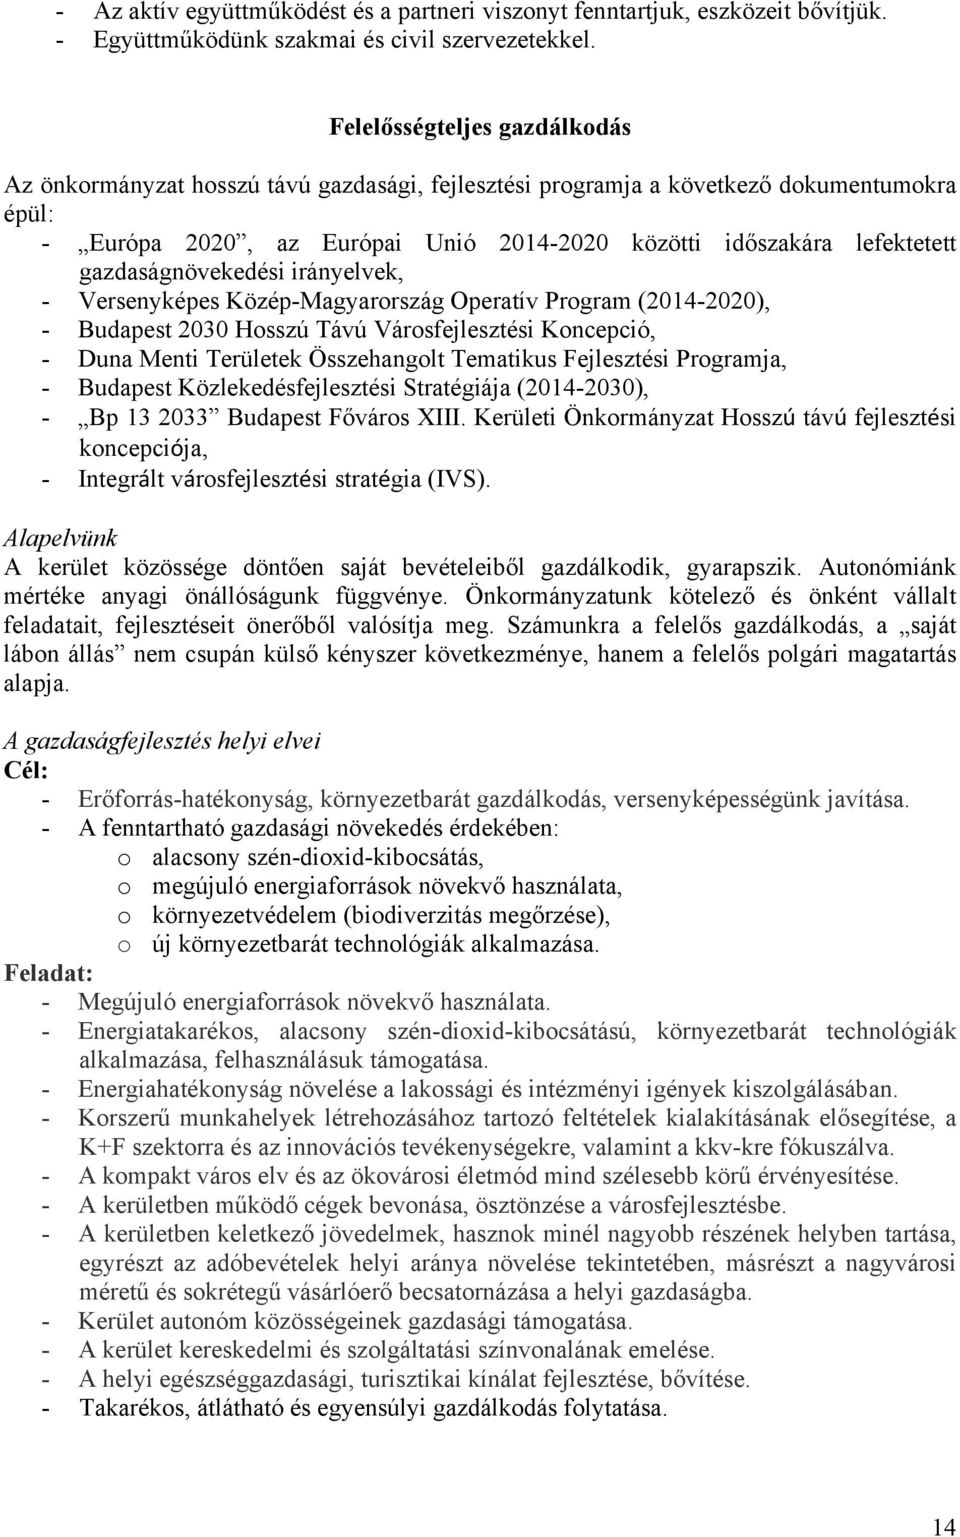 gazdaságnövekedési irányelvek, - Versenyképes Közép-Magyarország Operatív Program (2014-2020), - Budapest 2030 Hosszú Távú Városfejlesztési Koncepció, - Duna Menti Területek Összehangolt Tematikus